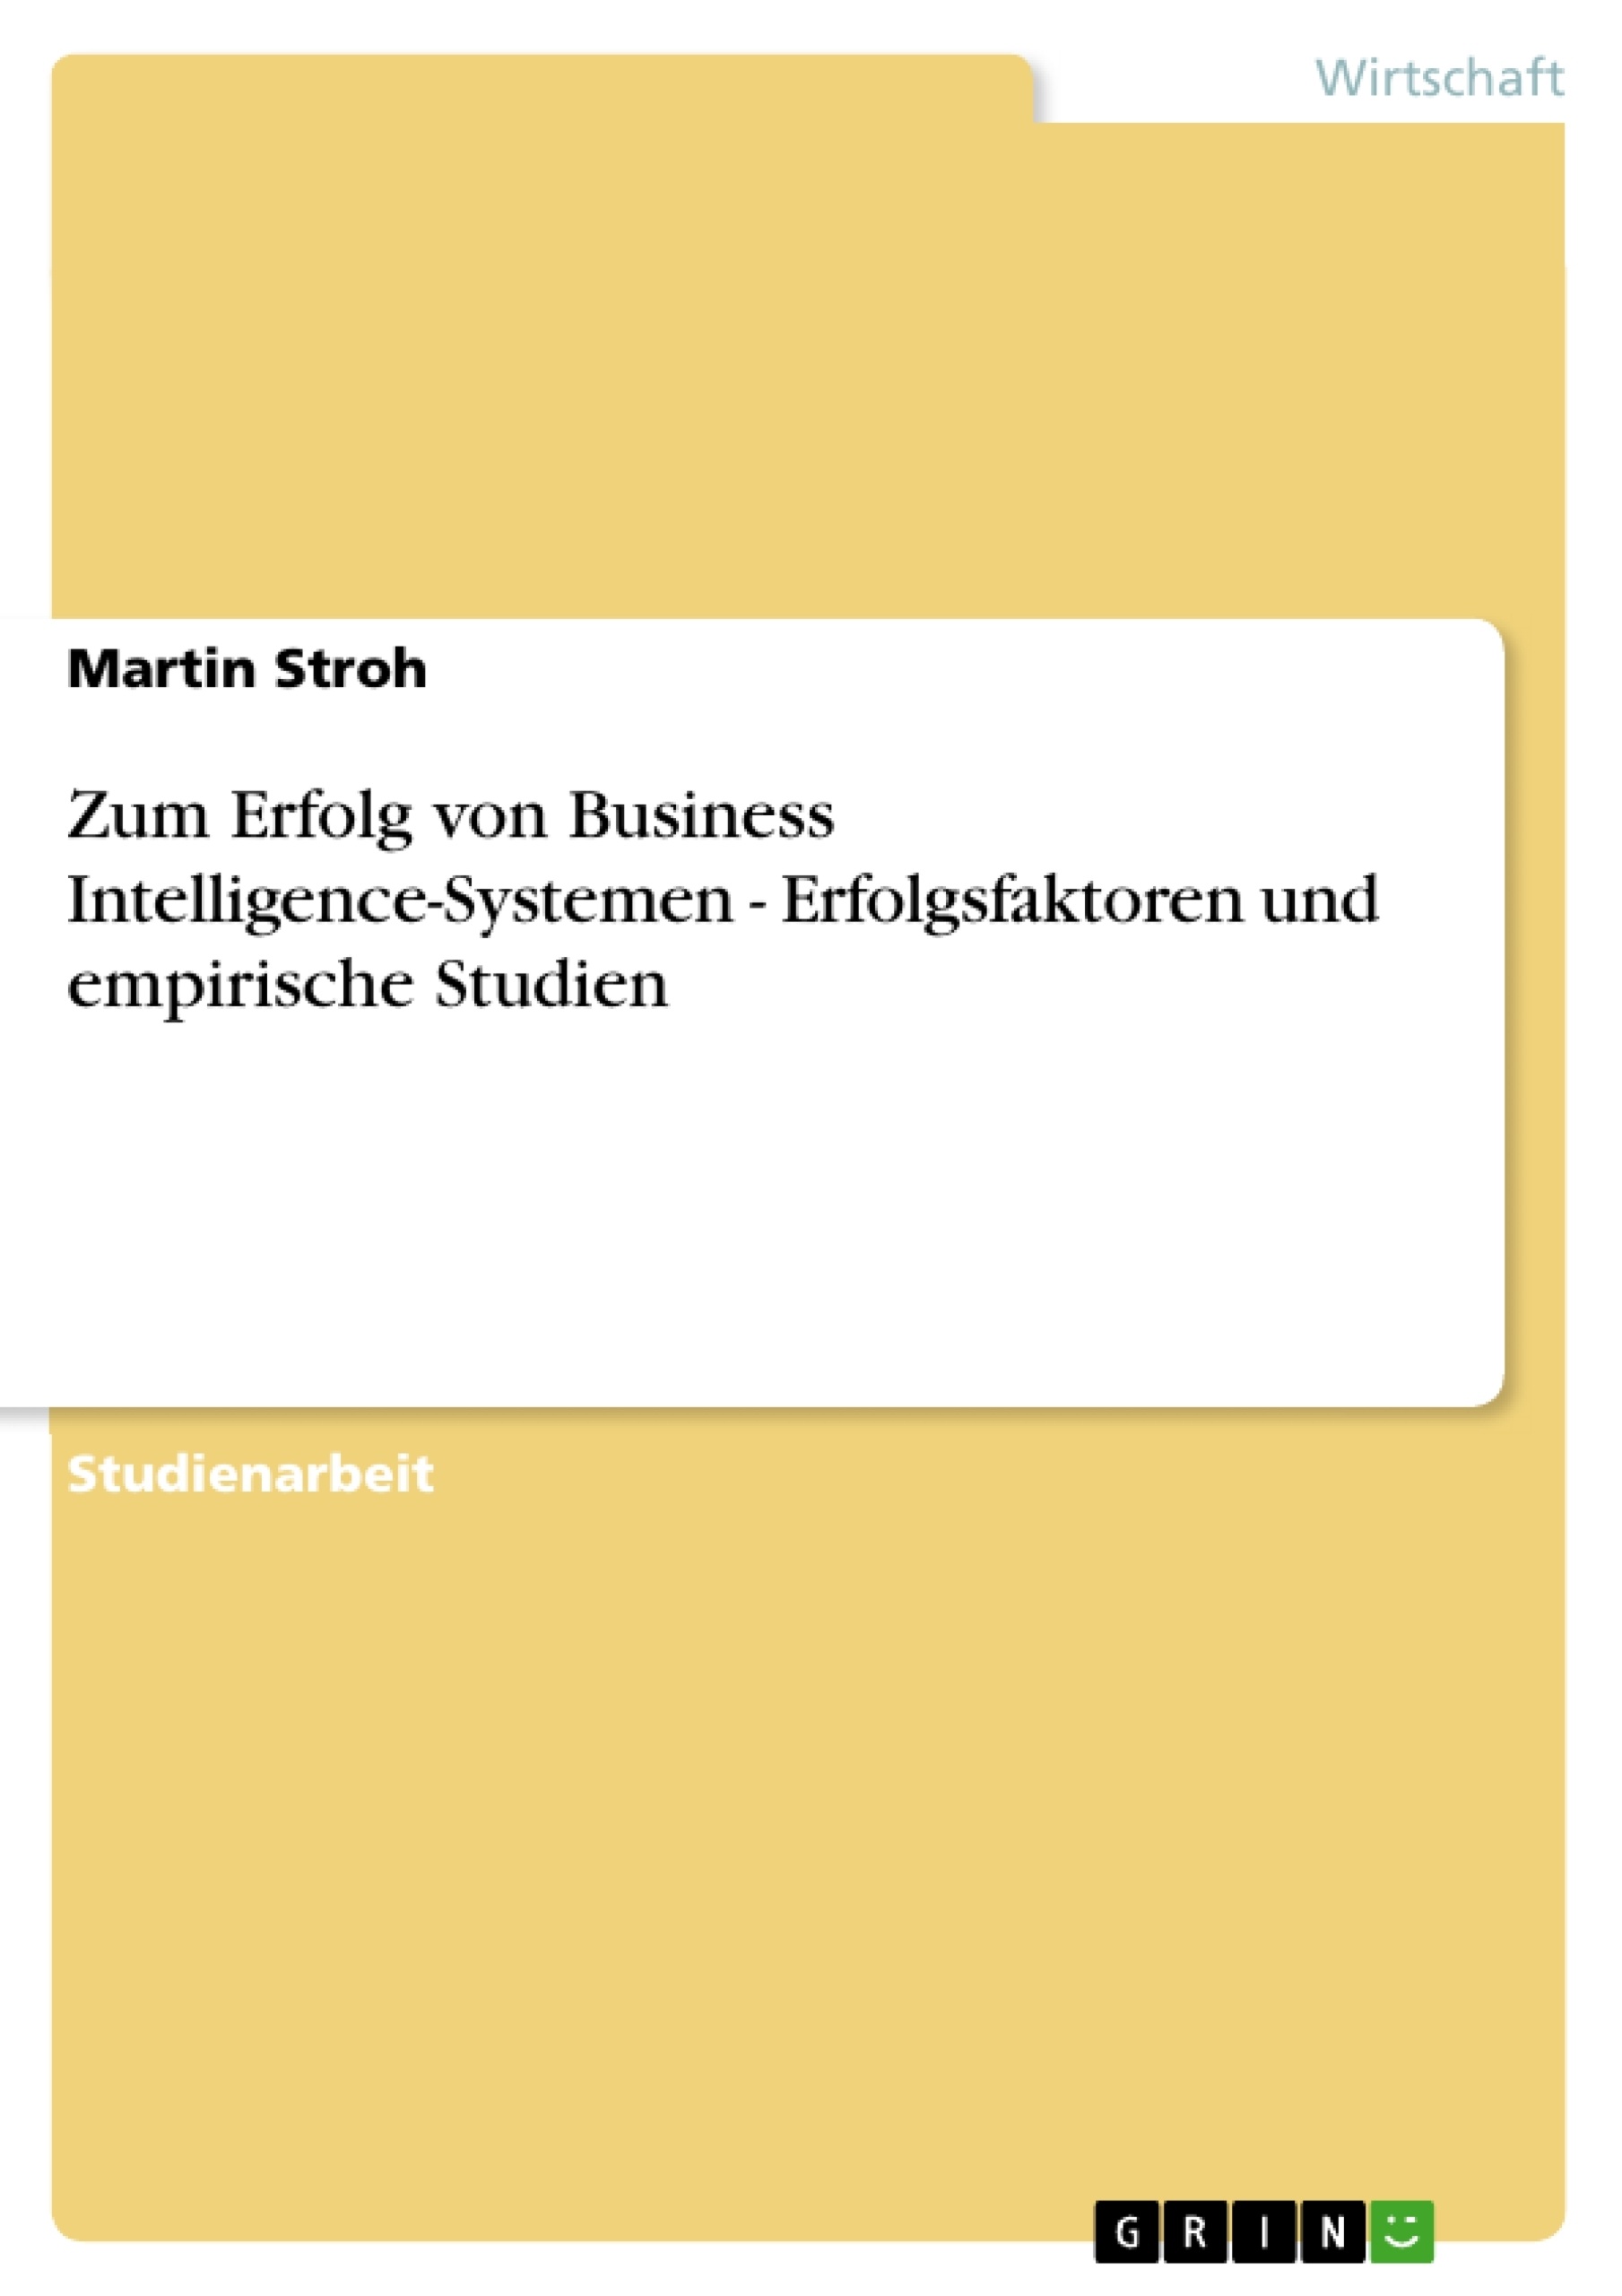 Título: Zum Erfolg von Business Intelligence-Systemen - Erfolgsfaktoren und empirische Studien